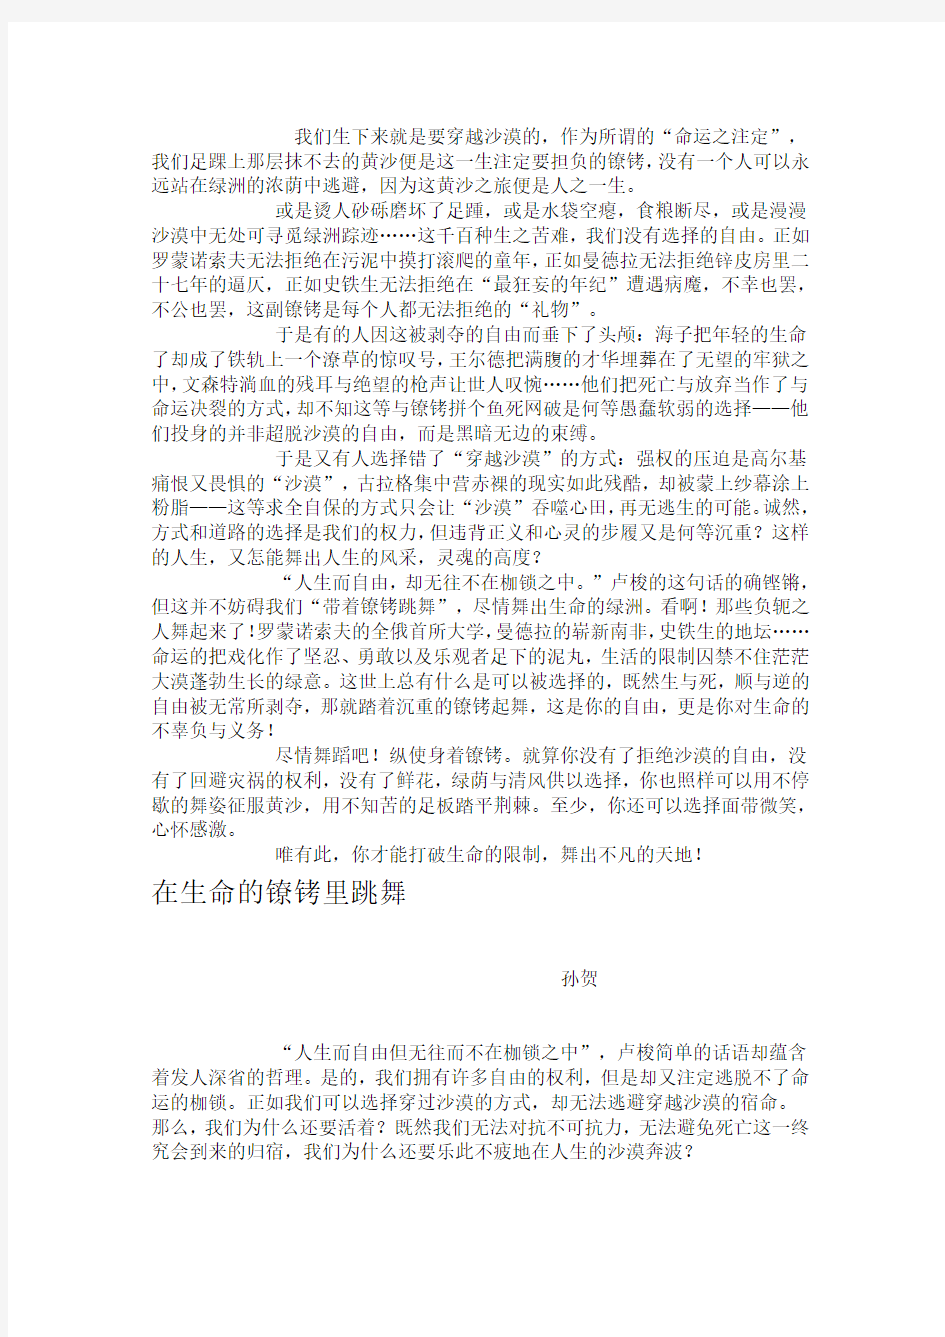 2014年上海卷高考作文范文